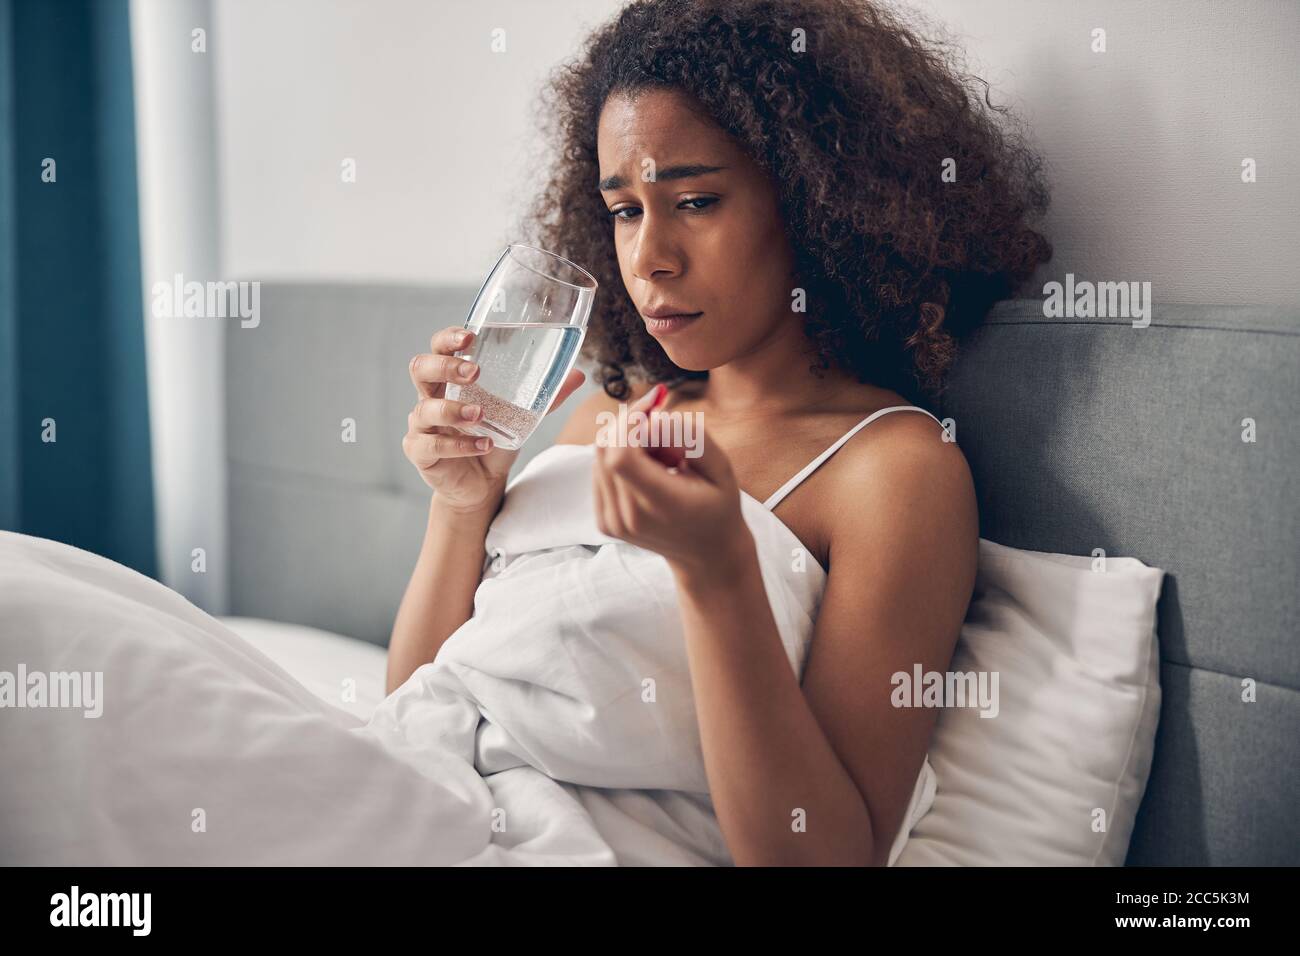 Kranke niedergelaunte junge dunkelhaarige Dame, die im Bett sitzt Stockfoto